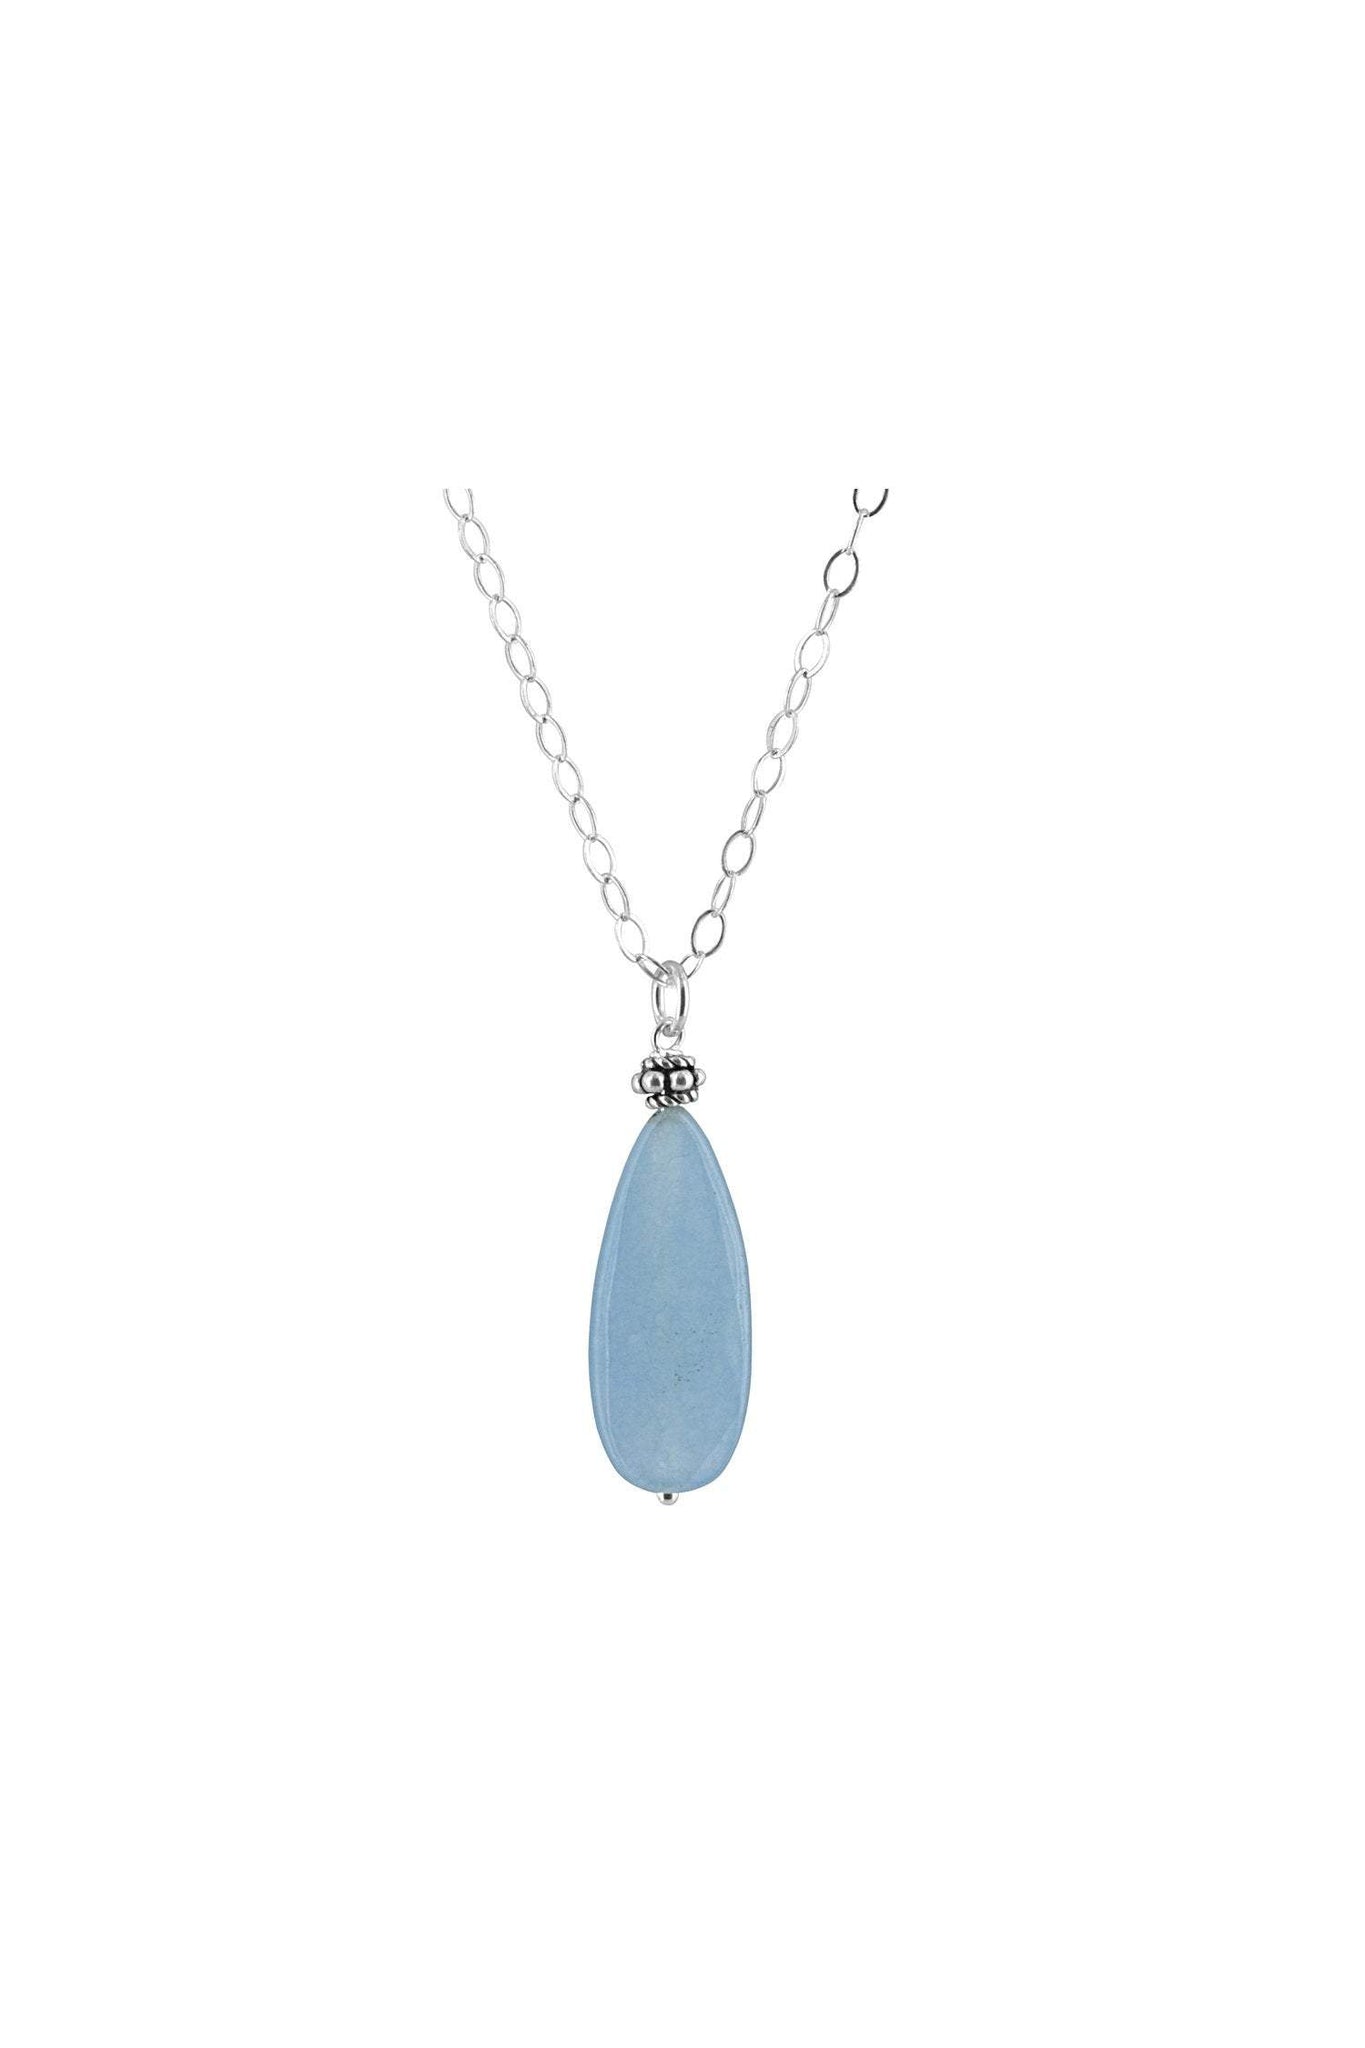 Blue Jade Pendant Necklace